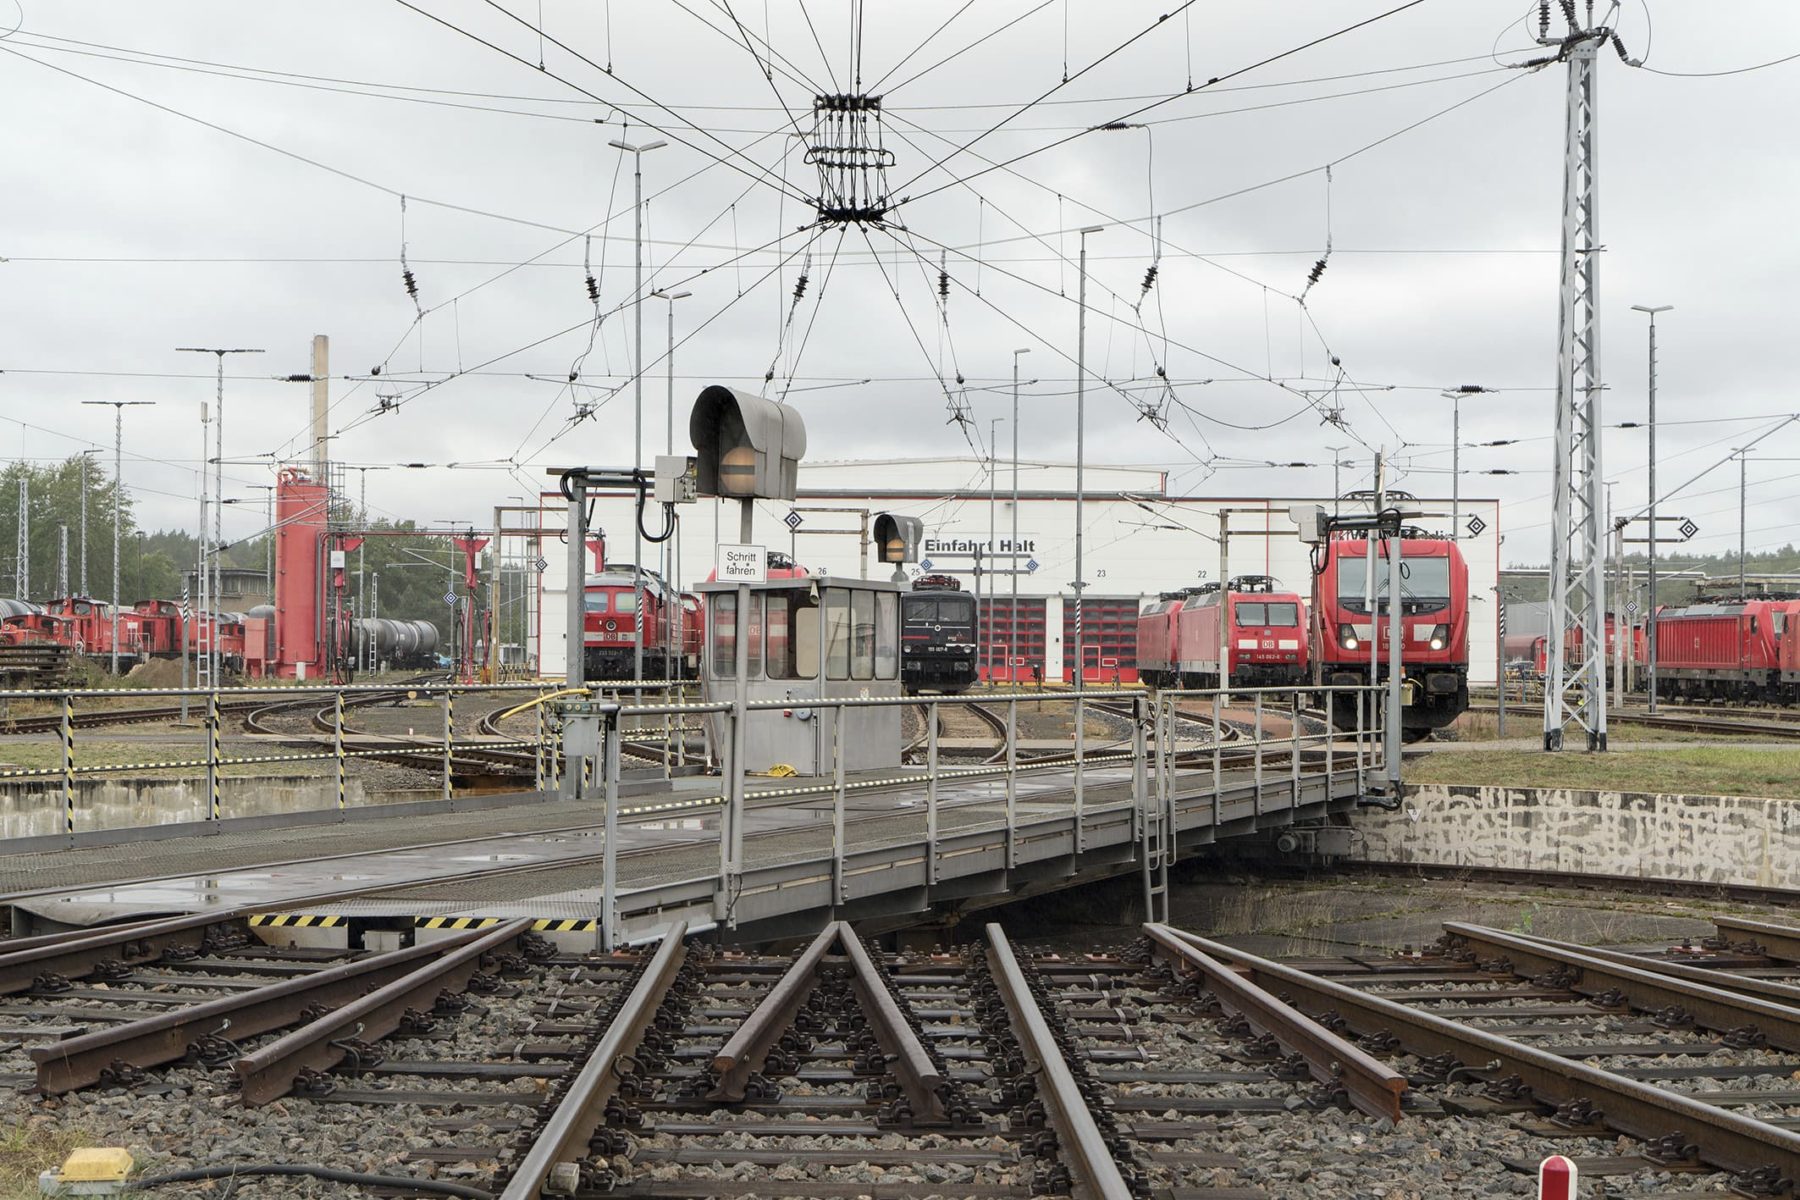 Drehscheibe auf einem Bahnbetriebsgelände, im Hintergrund stehen verschiedene Lokomotive